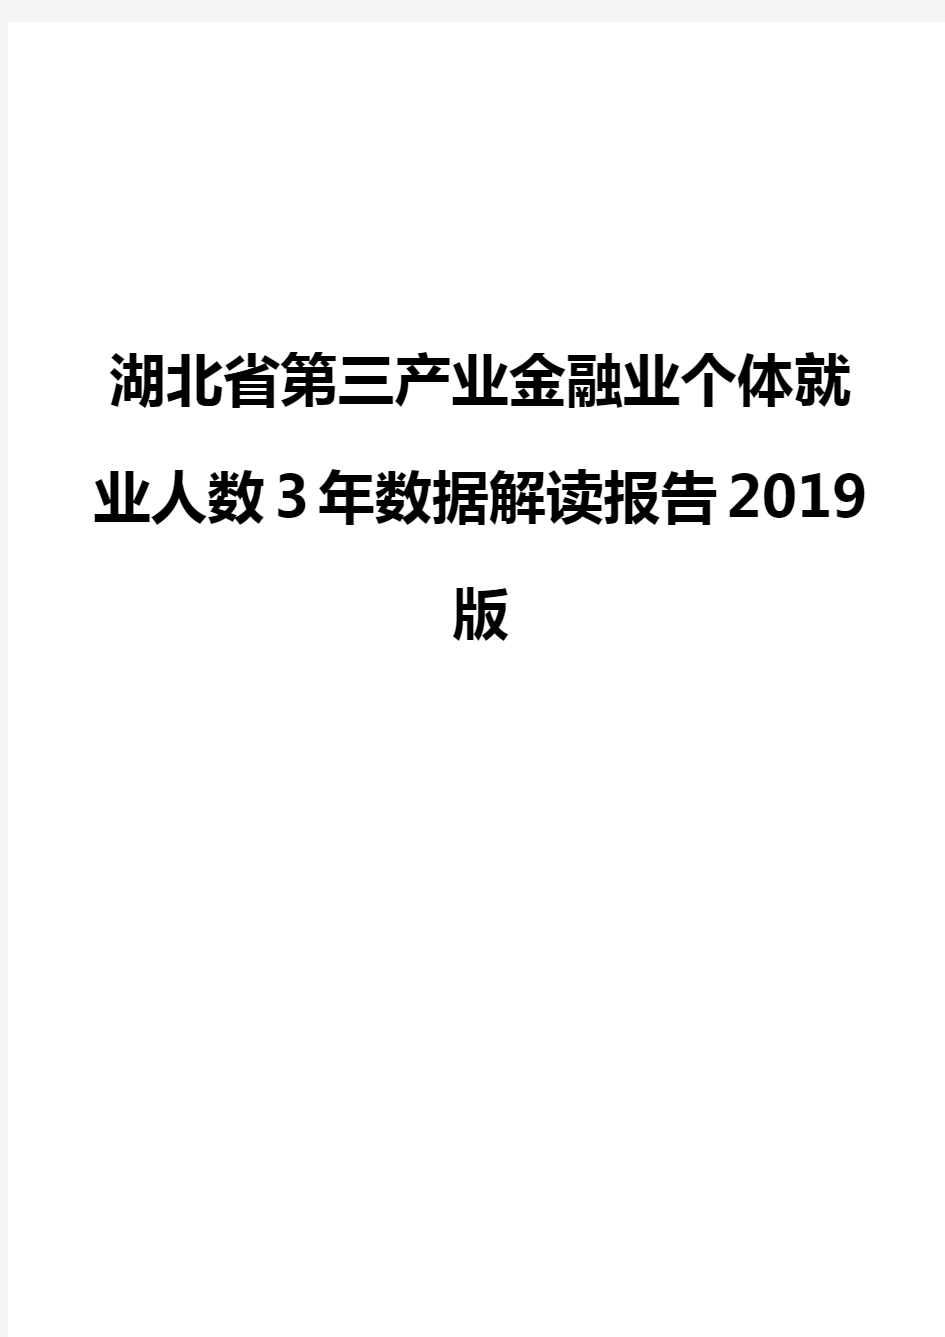 湖北省第三产业金融业个体就业人数3年数据解读报告2019版